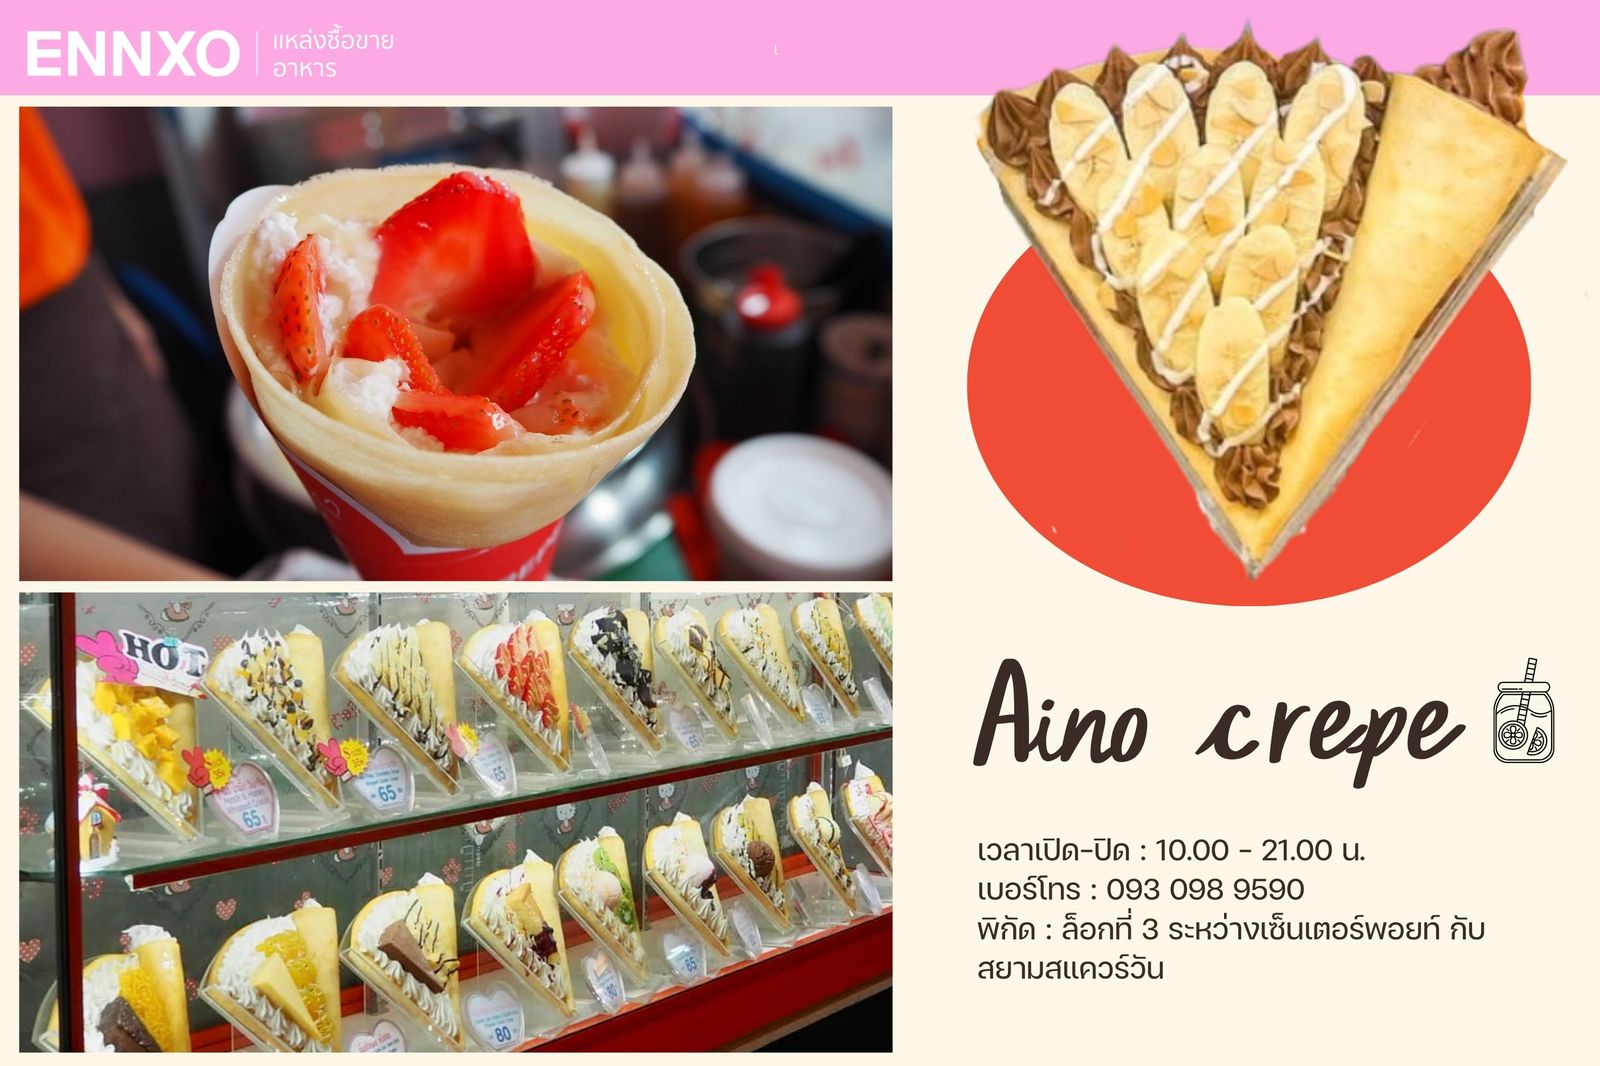 ร้าน Aino Crepe ร้านเครปญี่ปุ่น ราคาไม่แพง แต่บอกเลยว่ารสชาติดีมากๆ อร่อยจนหยุดกินไม่ได้